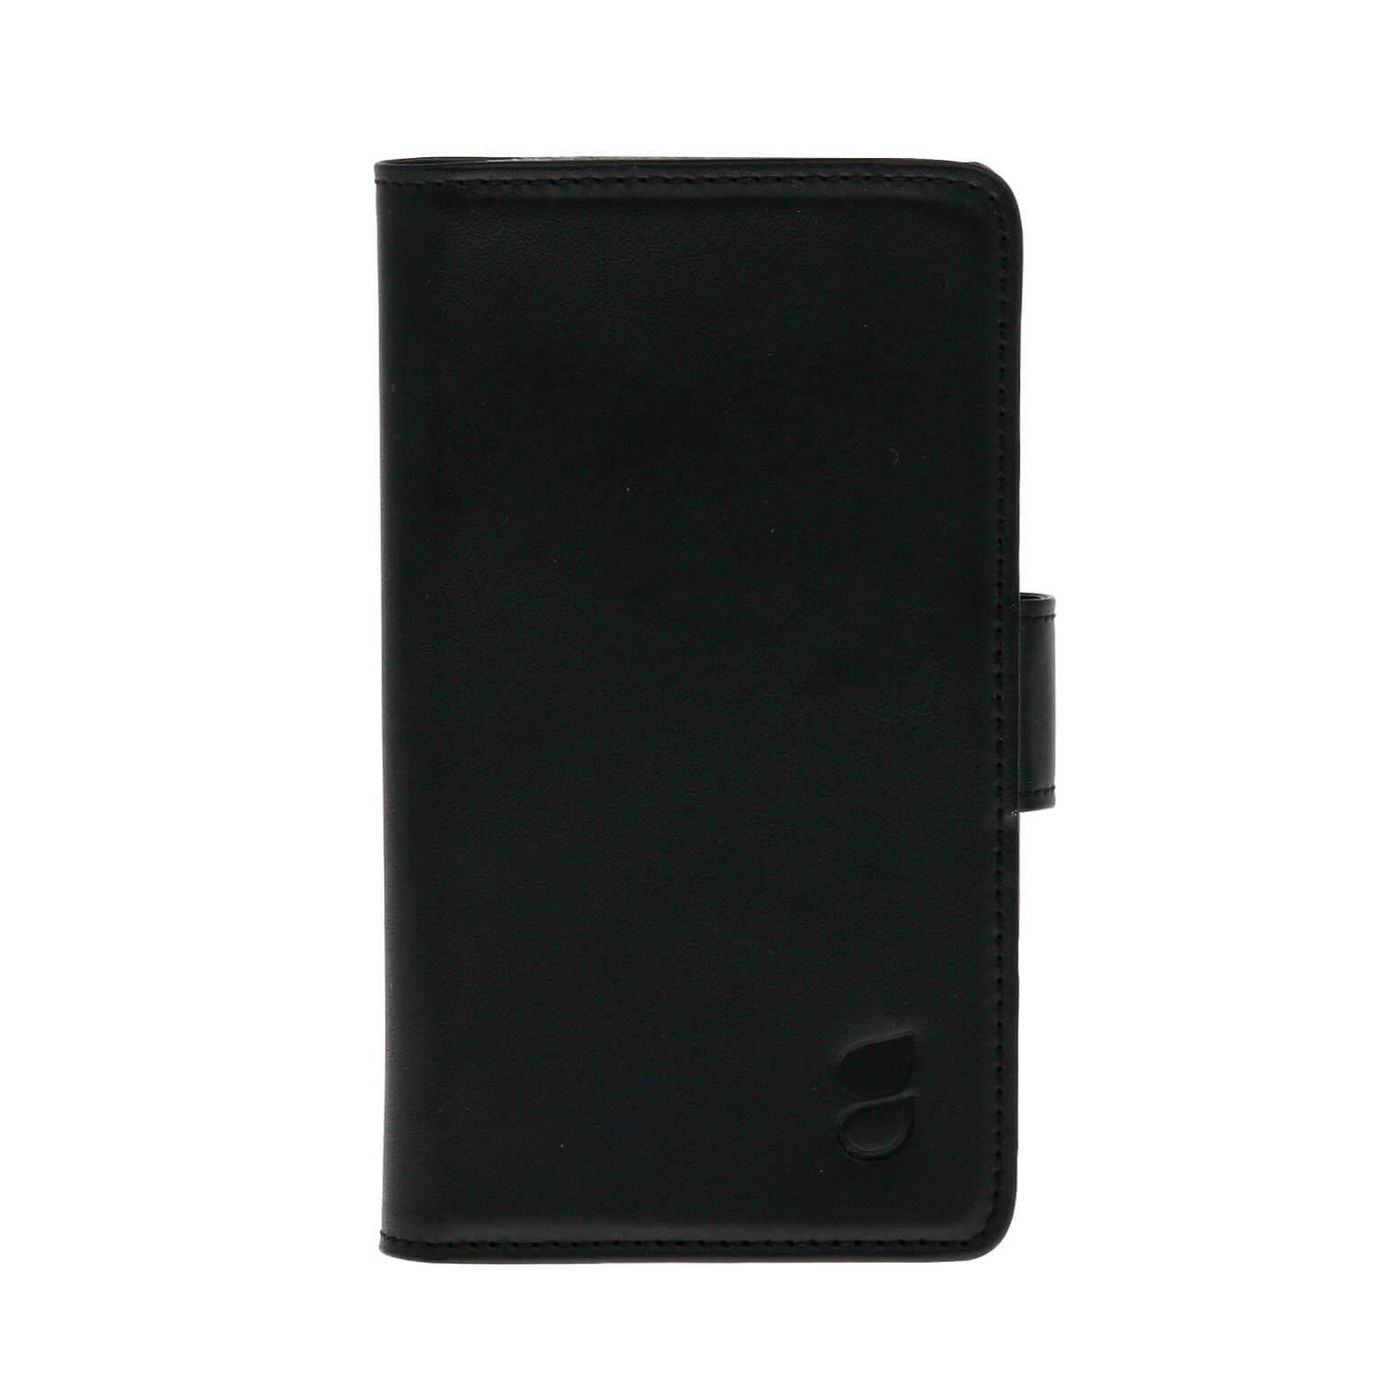 Gear 658786 Sony Xperia Z5 Premium Wallet 